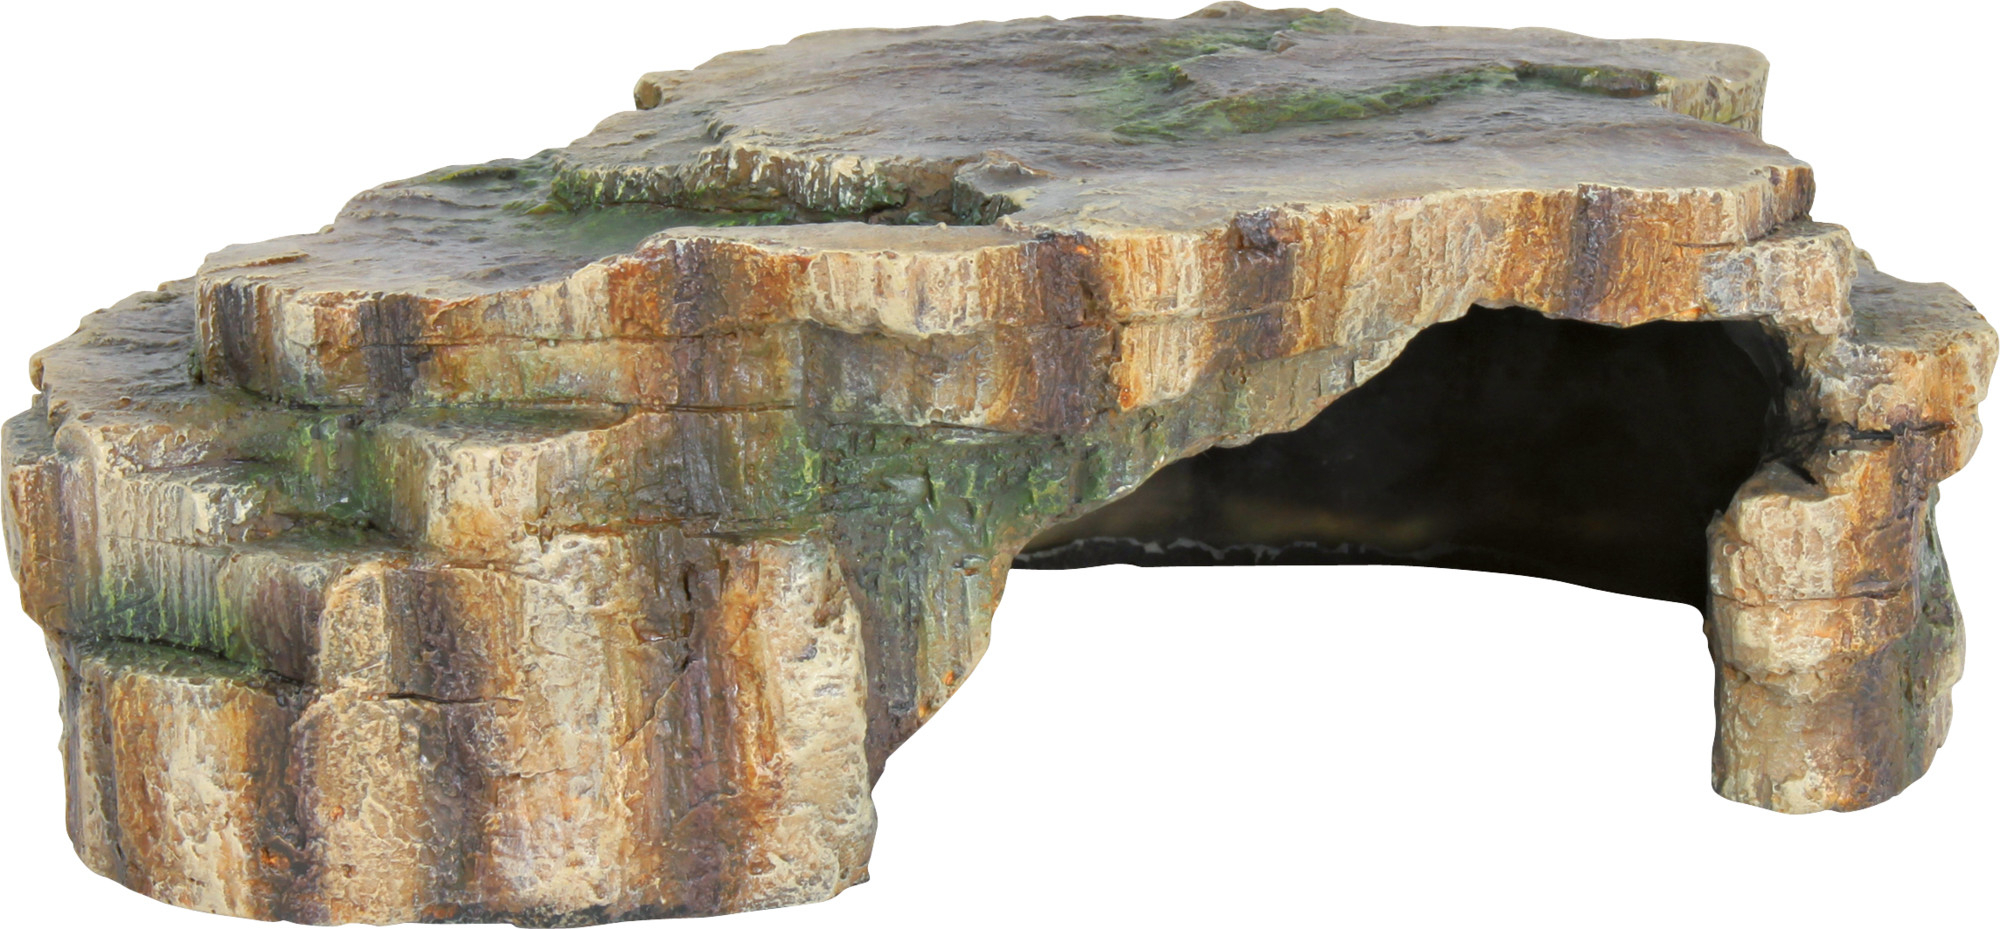 Grotta piatta per rettile